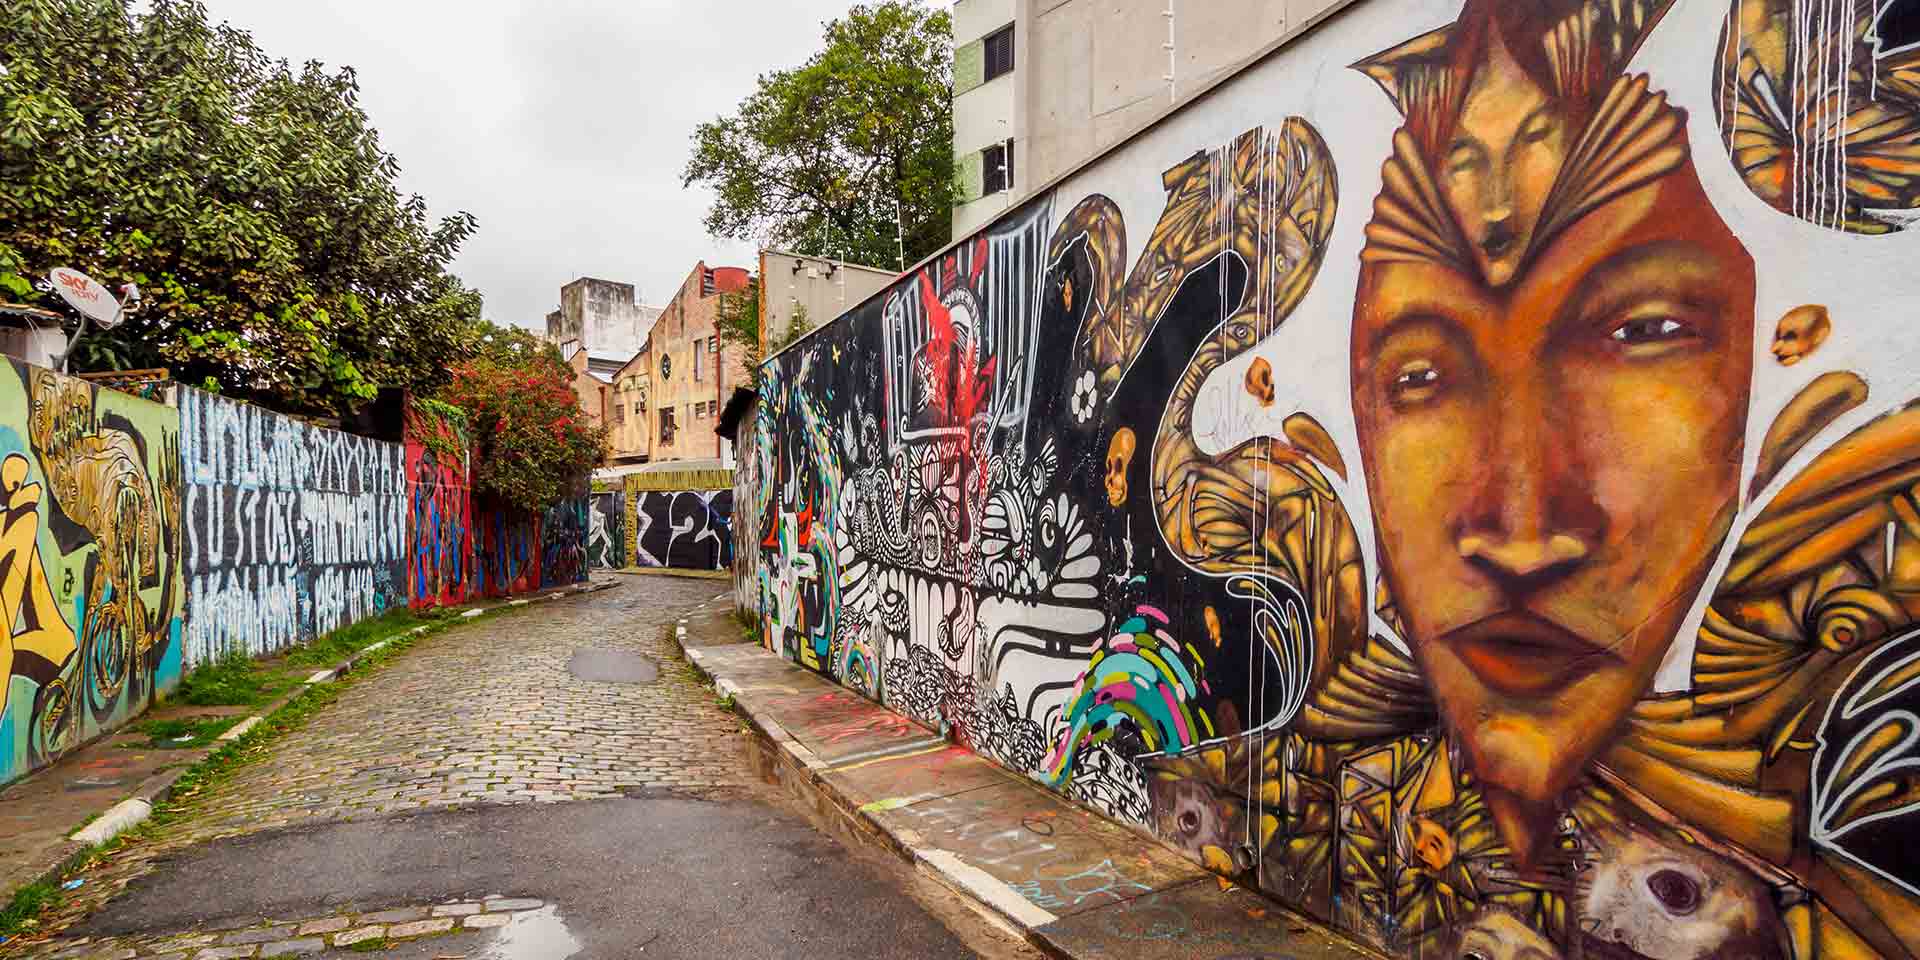 Increíble creencia Gracias Arte Urbano y Graffiti en São Paulo | Marriott Bonvoy Traveler